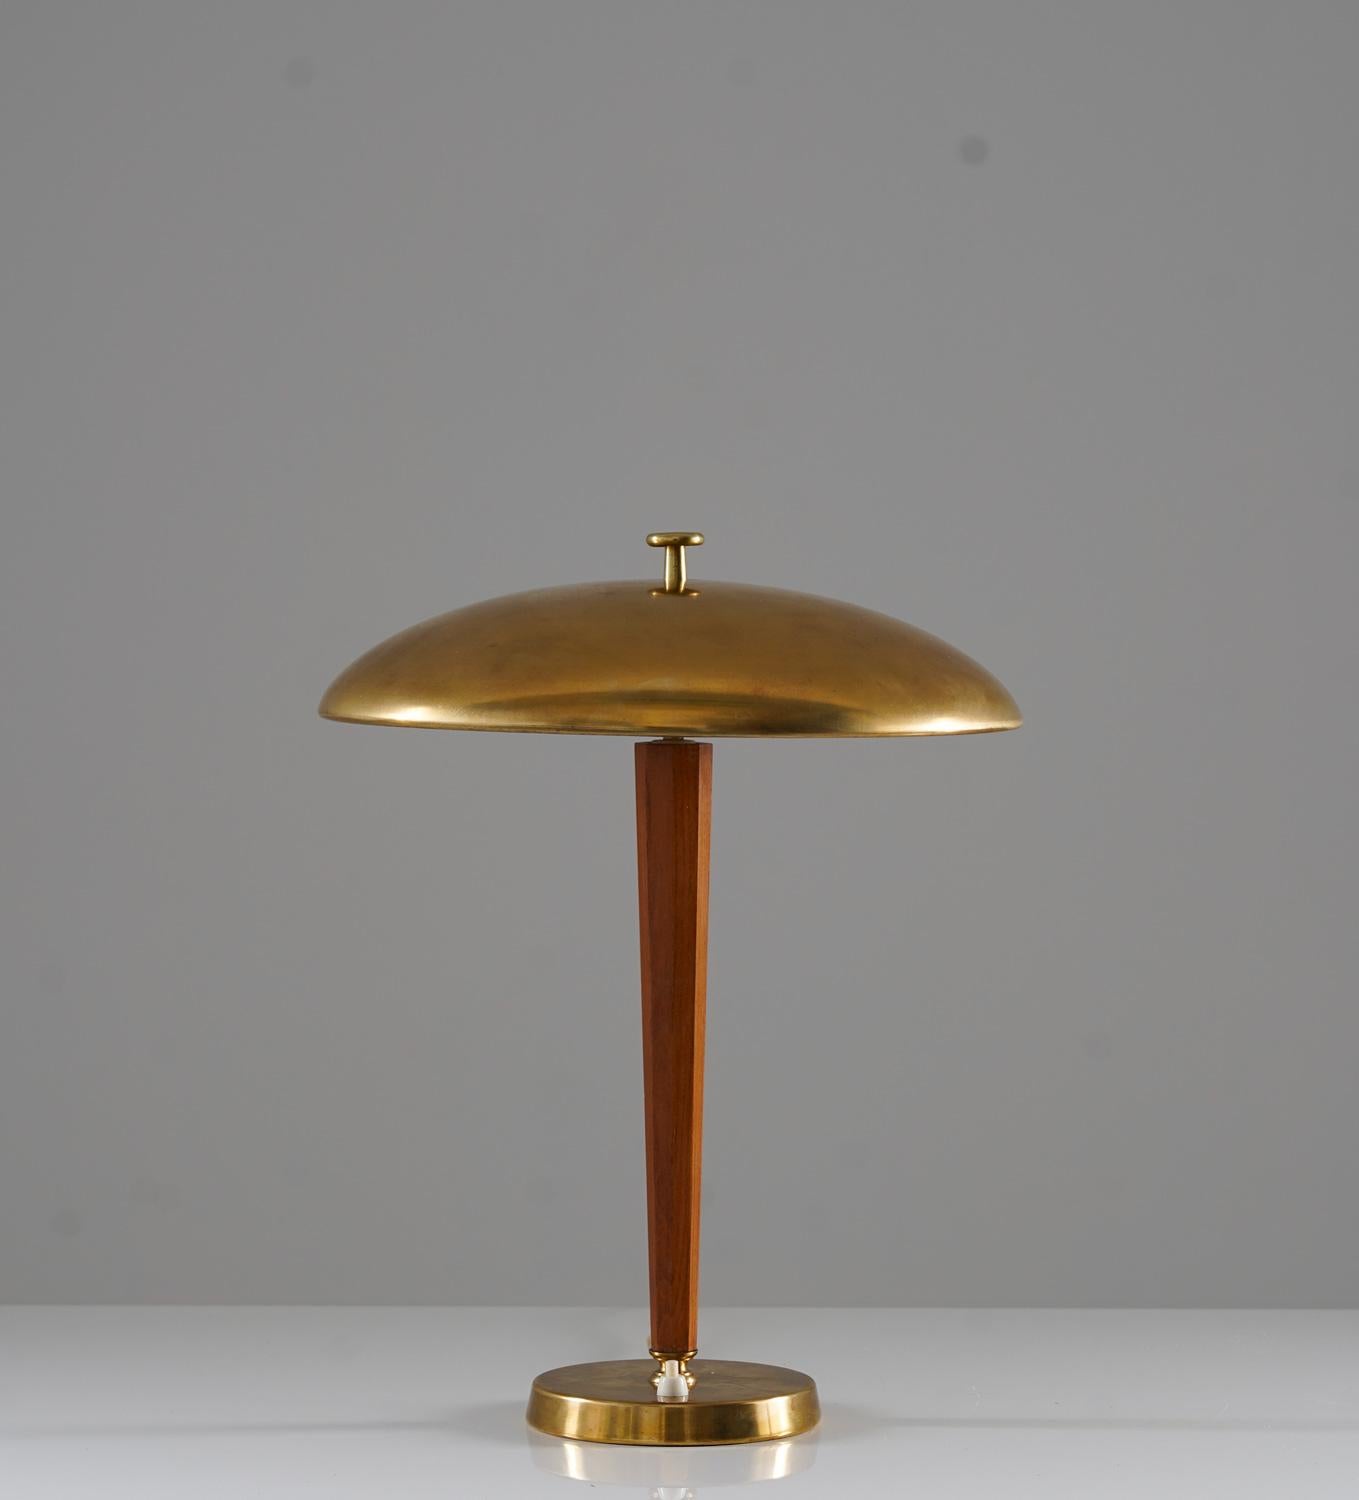 Magnifique lampe de table fabriquée par Nordiska Kompaniet (NK), vers 1930.
Cette lampe est fabriquée en laiton et en chêne, avec un abat-jour en laiton épais et solide. L'abat-jour cache deux sources lumineuses (E27, 25w). 


Condit : Bon état